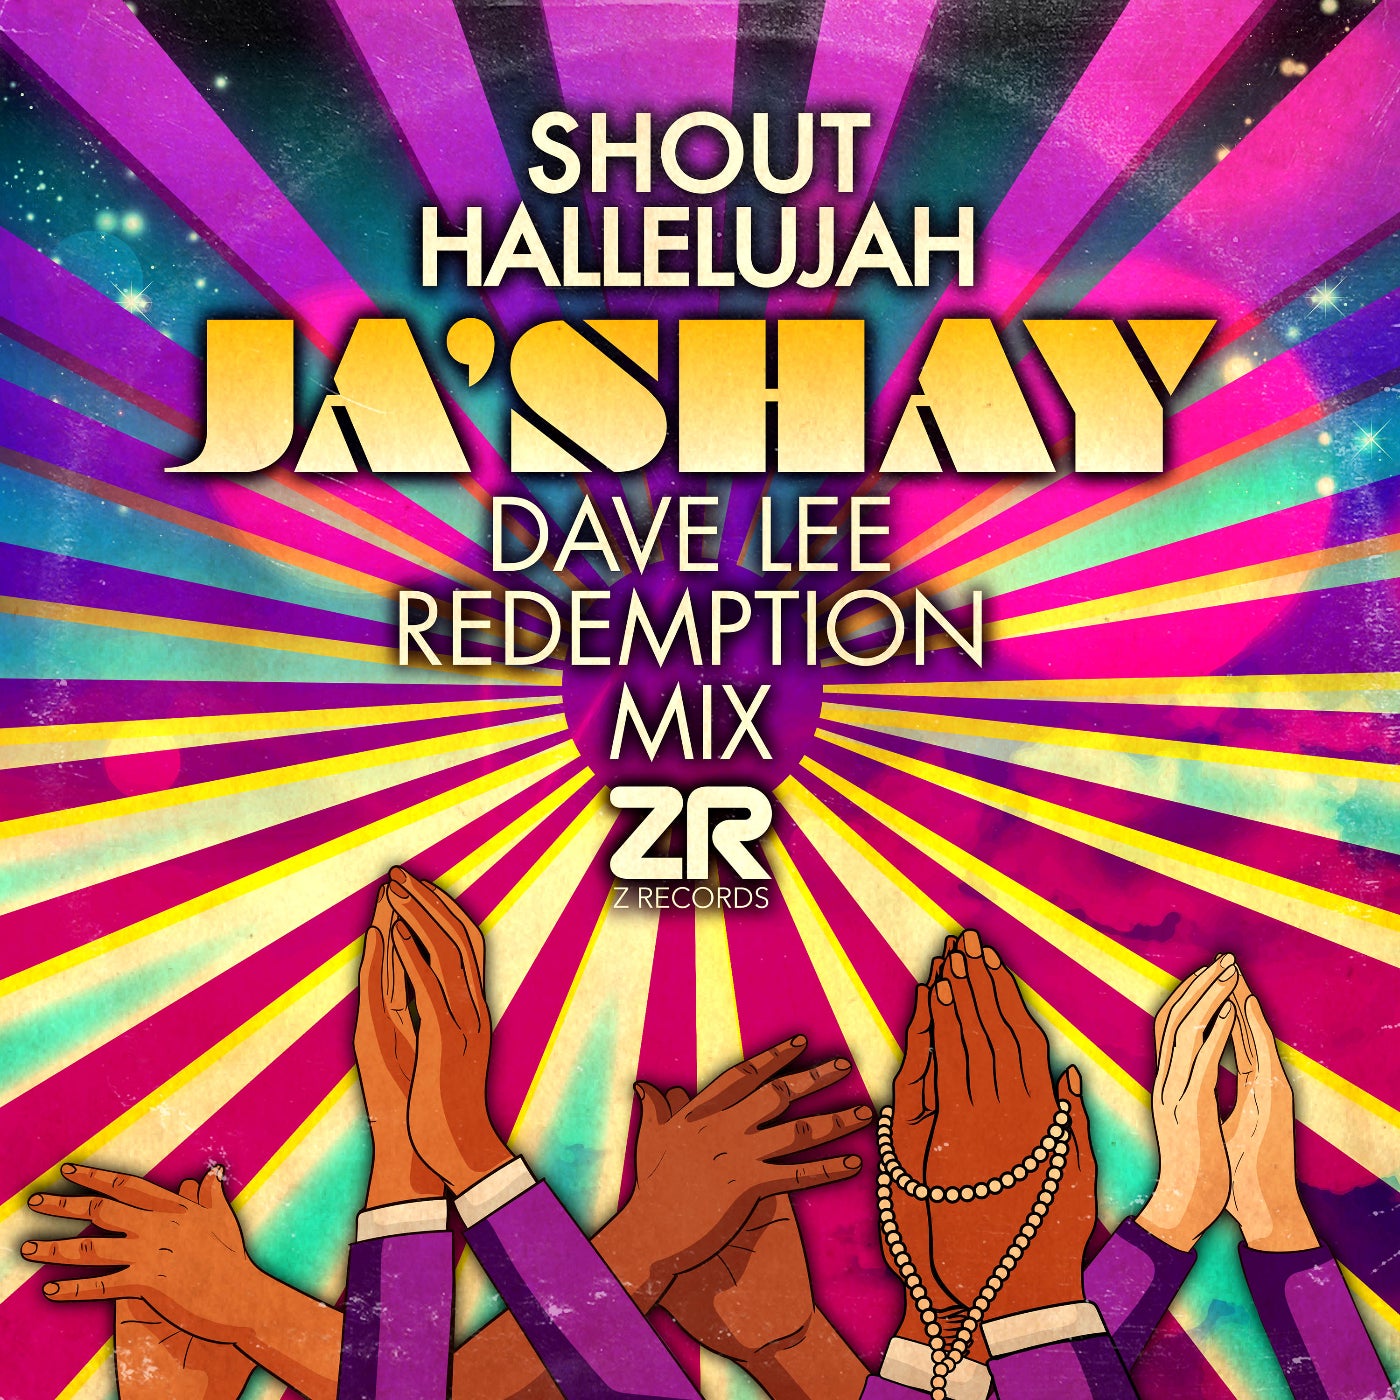 Ja'shay - "Shout Hallelujah" (Dave Lee Redemption Mix)